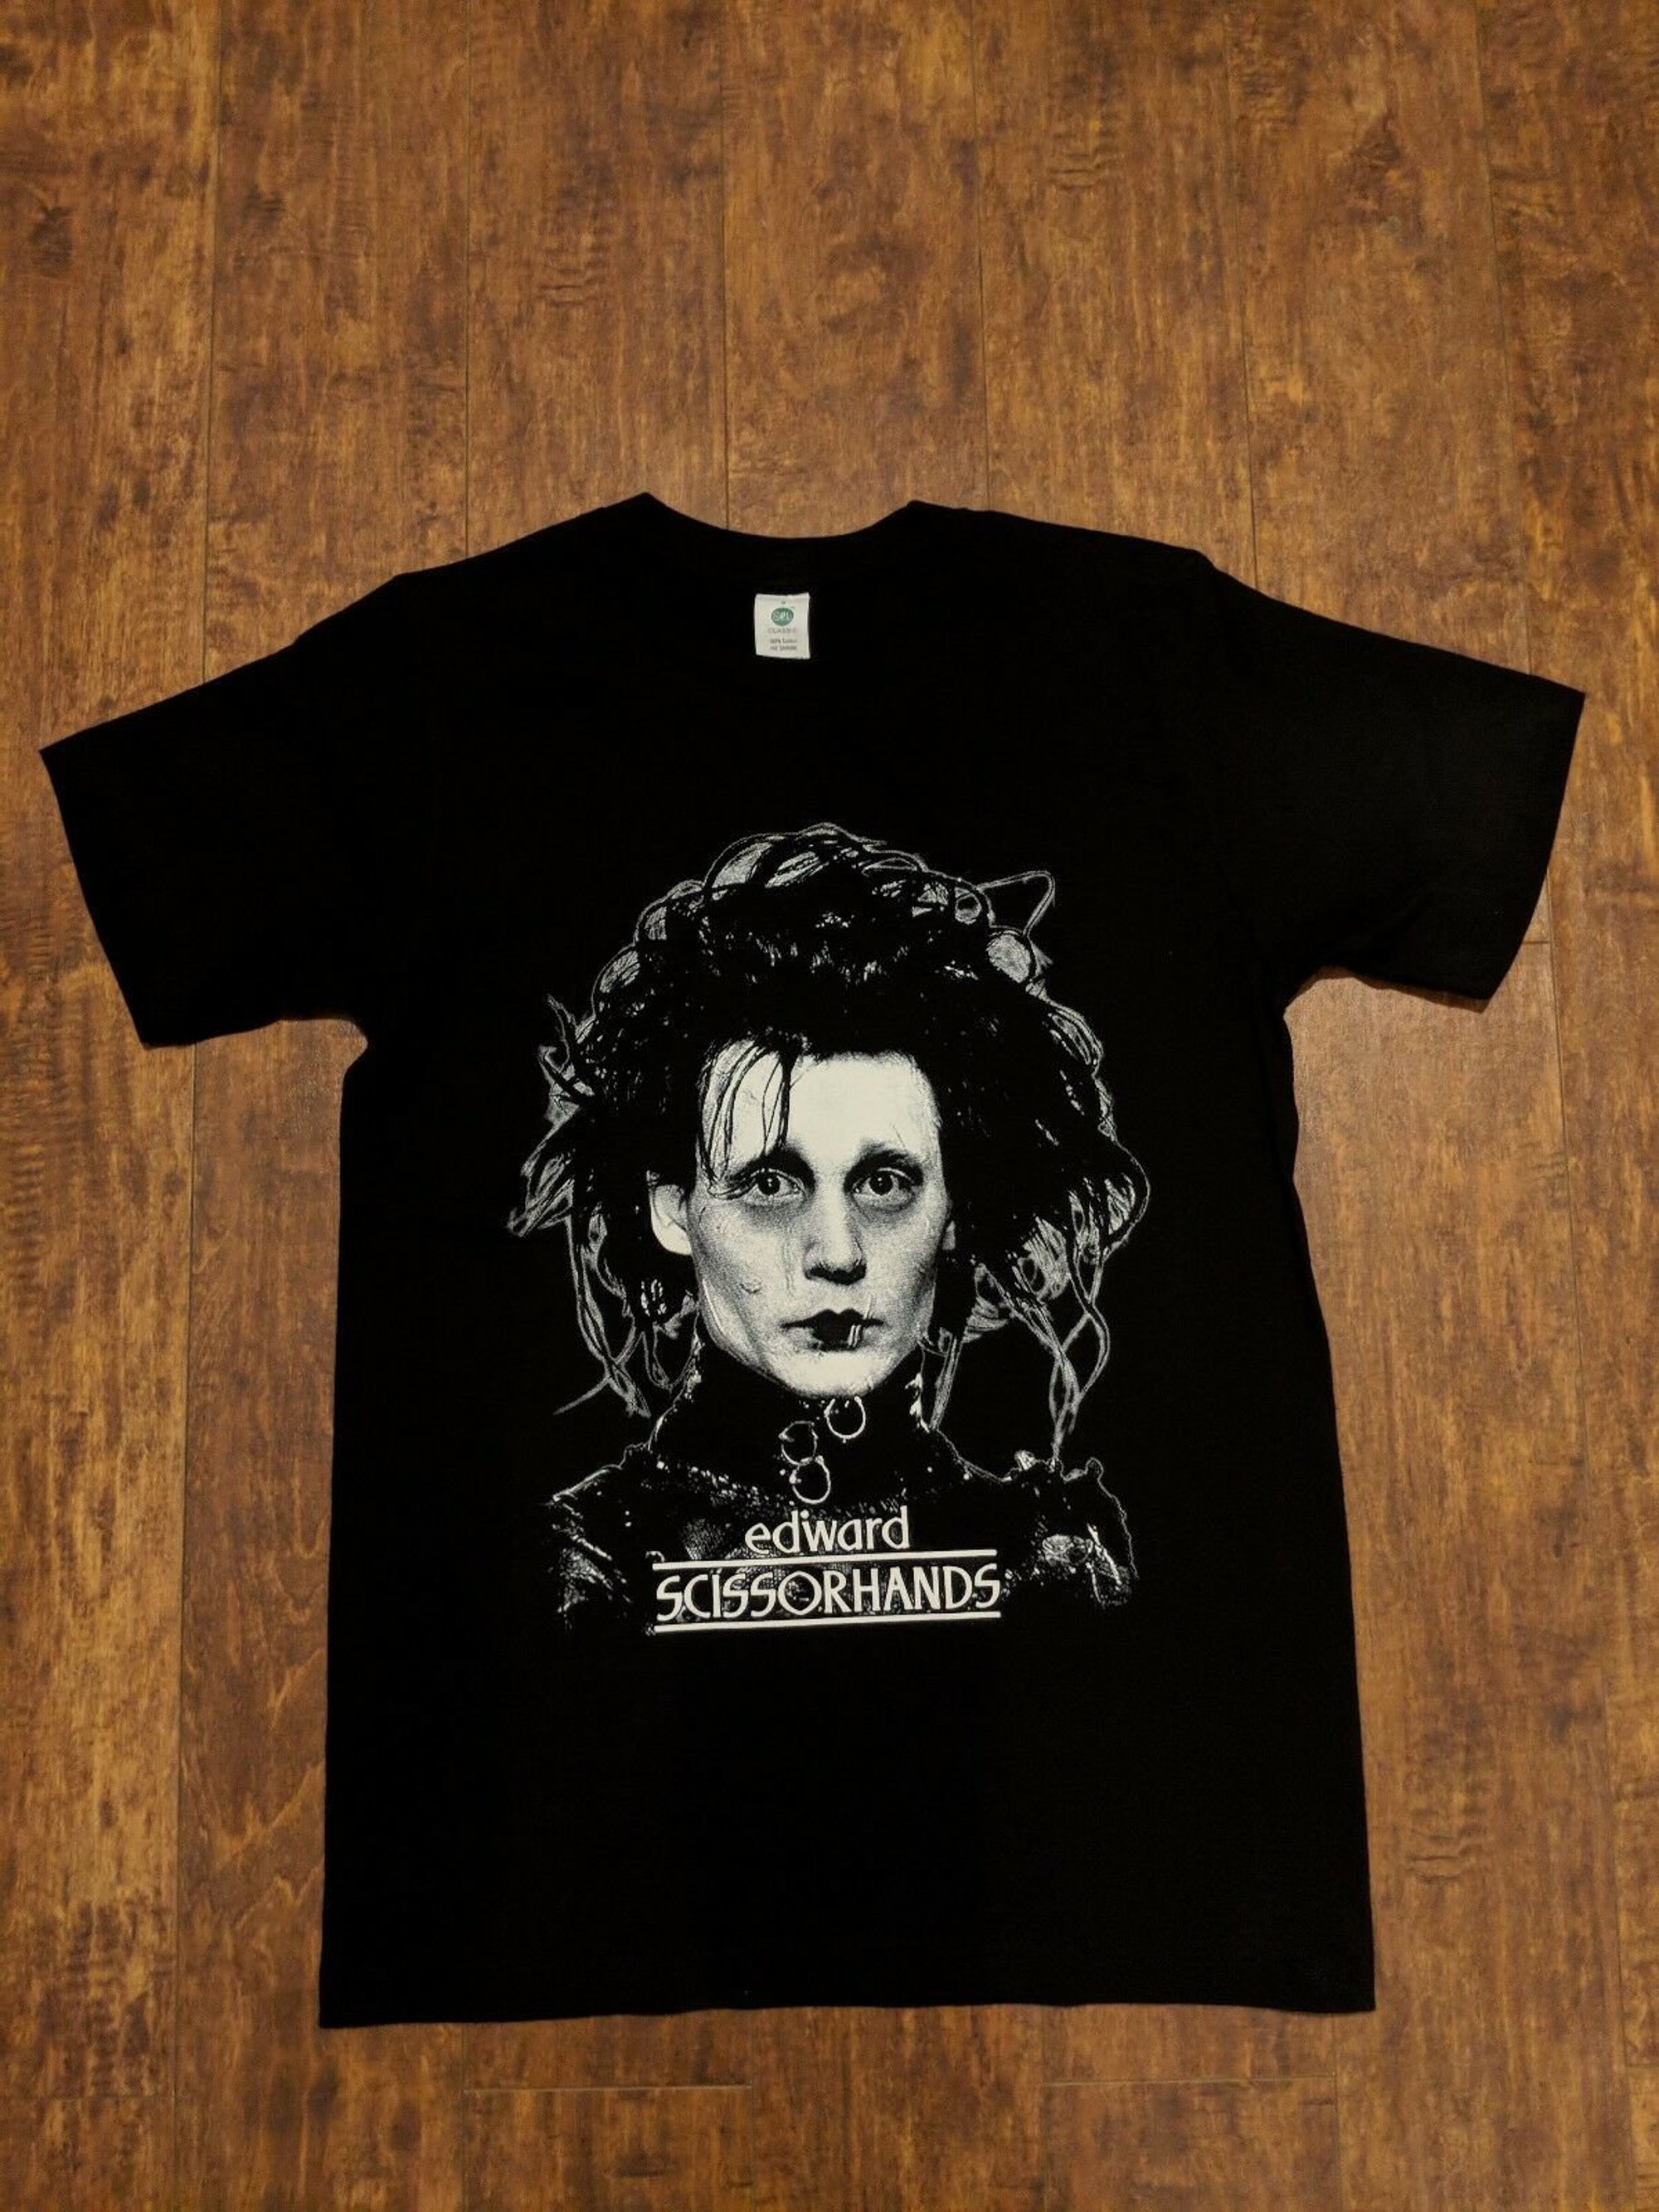 Edward scissorhands t-shirt